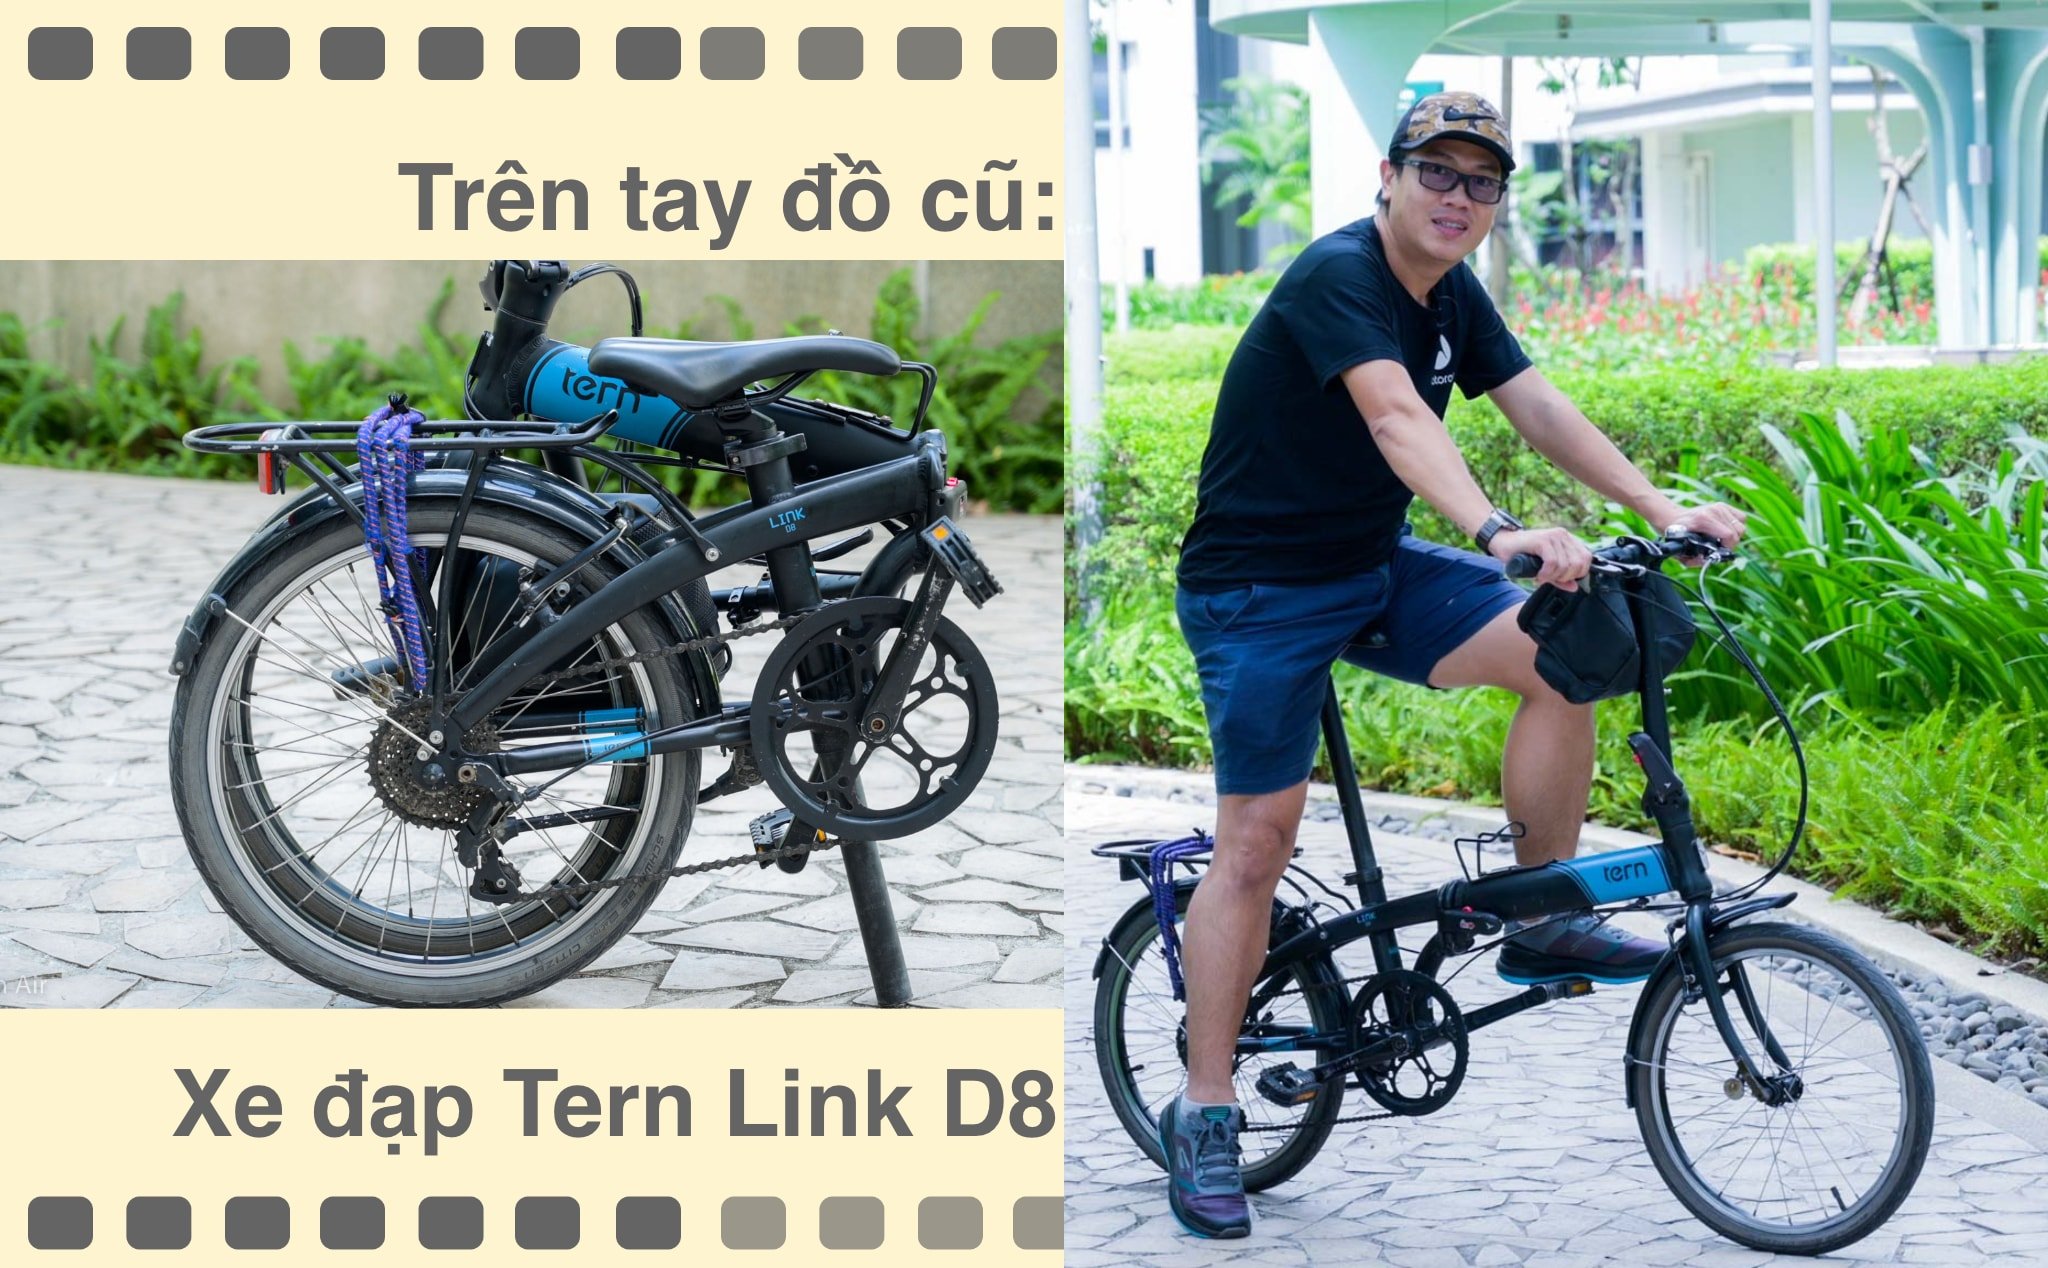 Trên tay đồ cũ: Xe đạp gấp Tern Link D8 mình đi hơn 10 năm